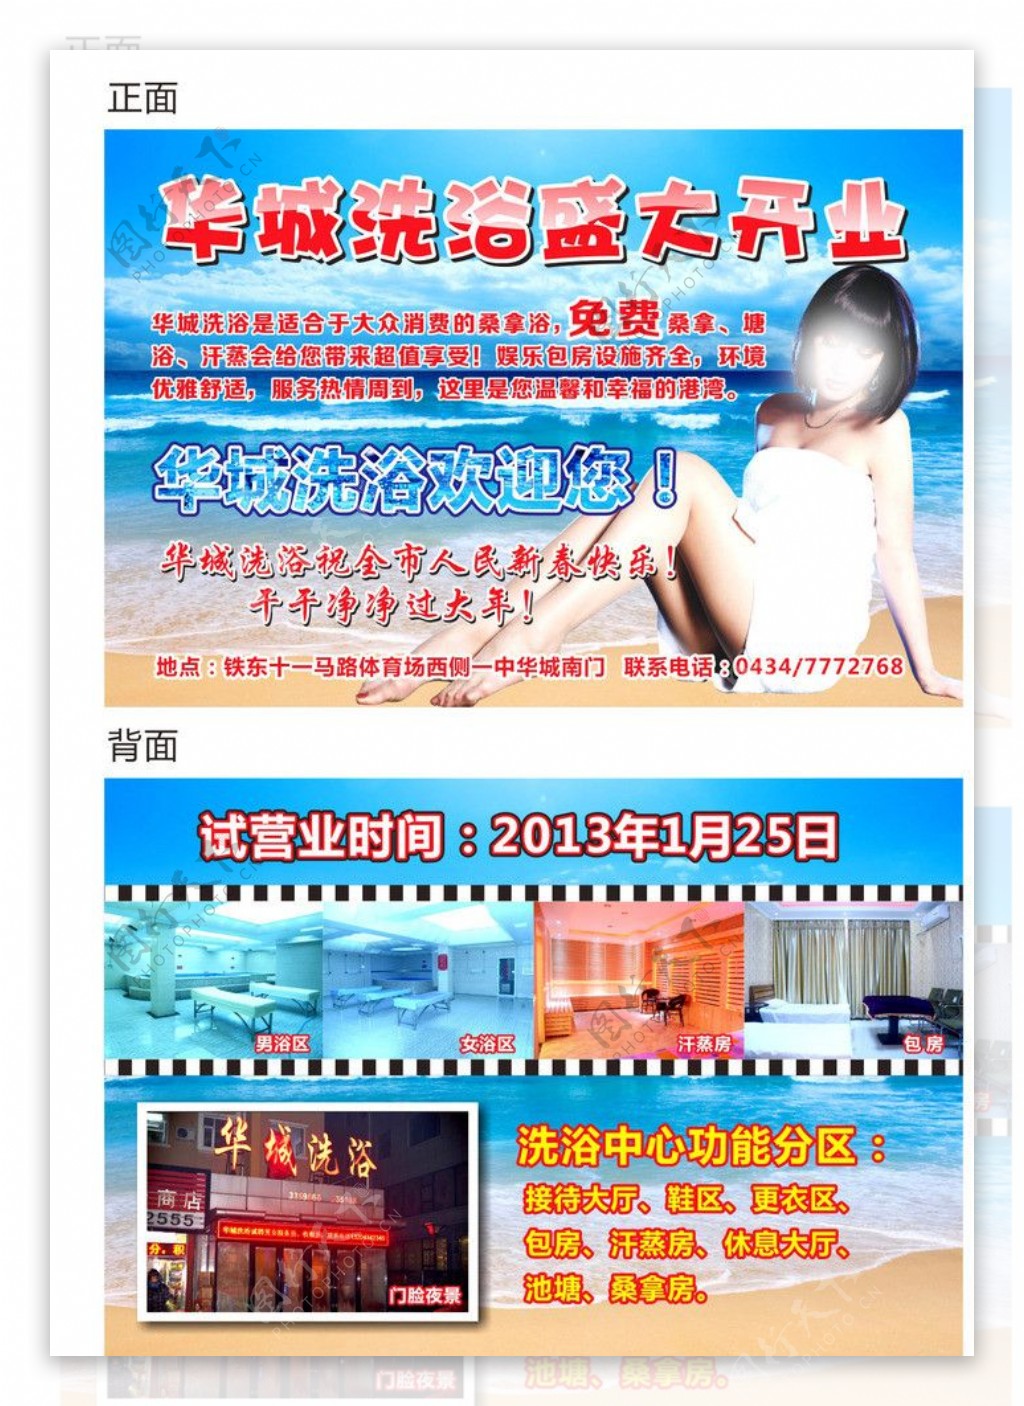 华城洗浴宣传单图片